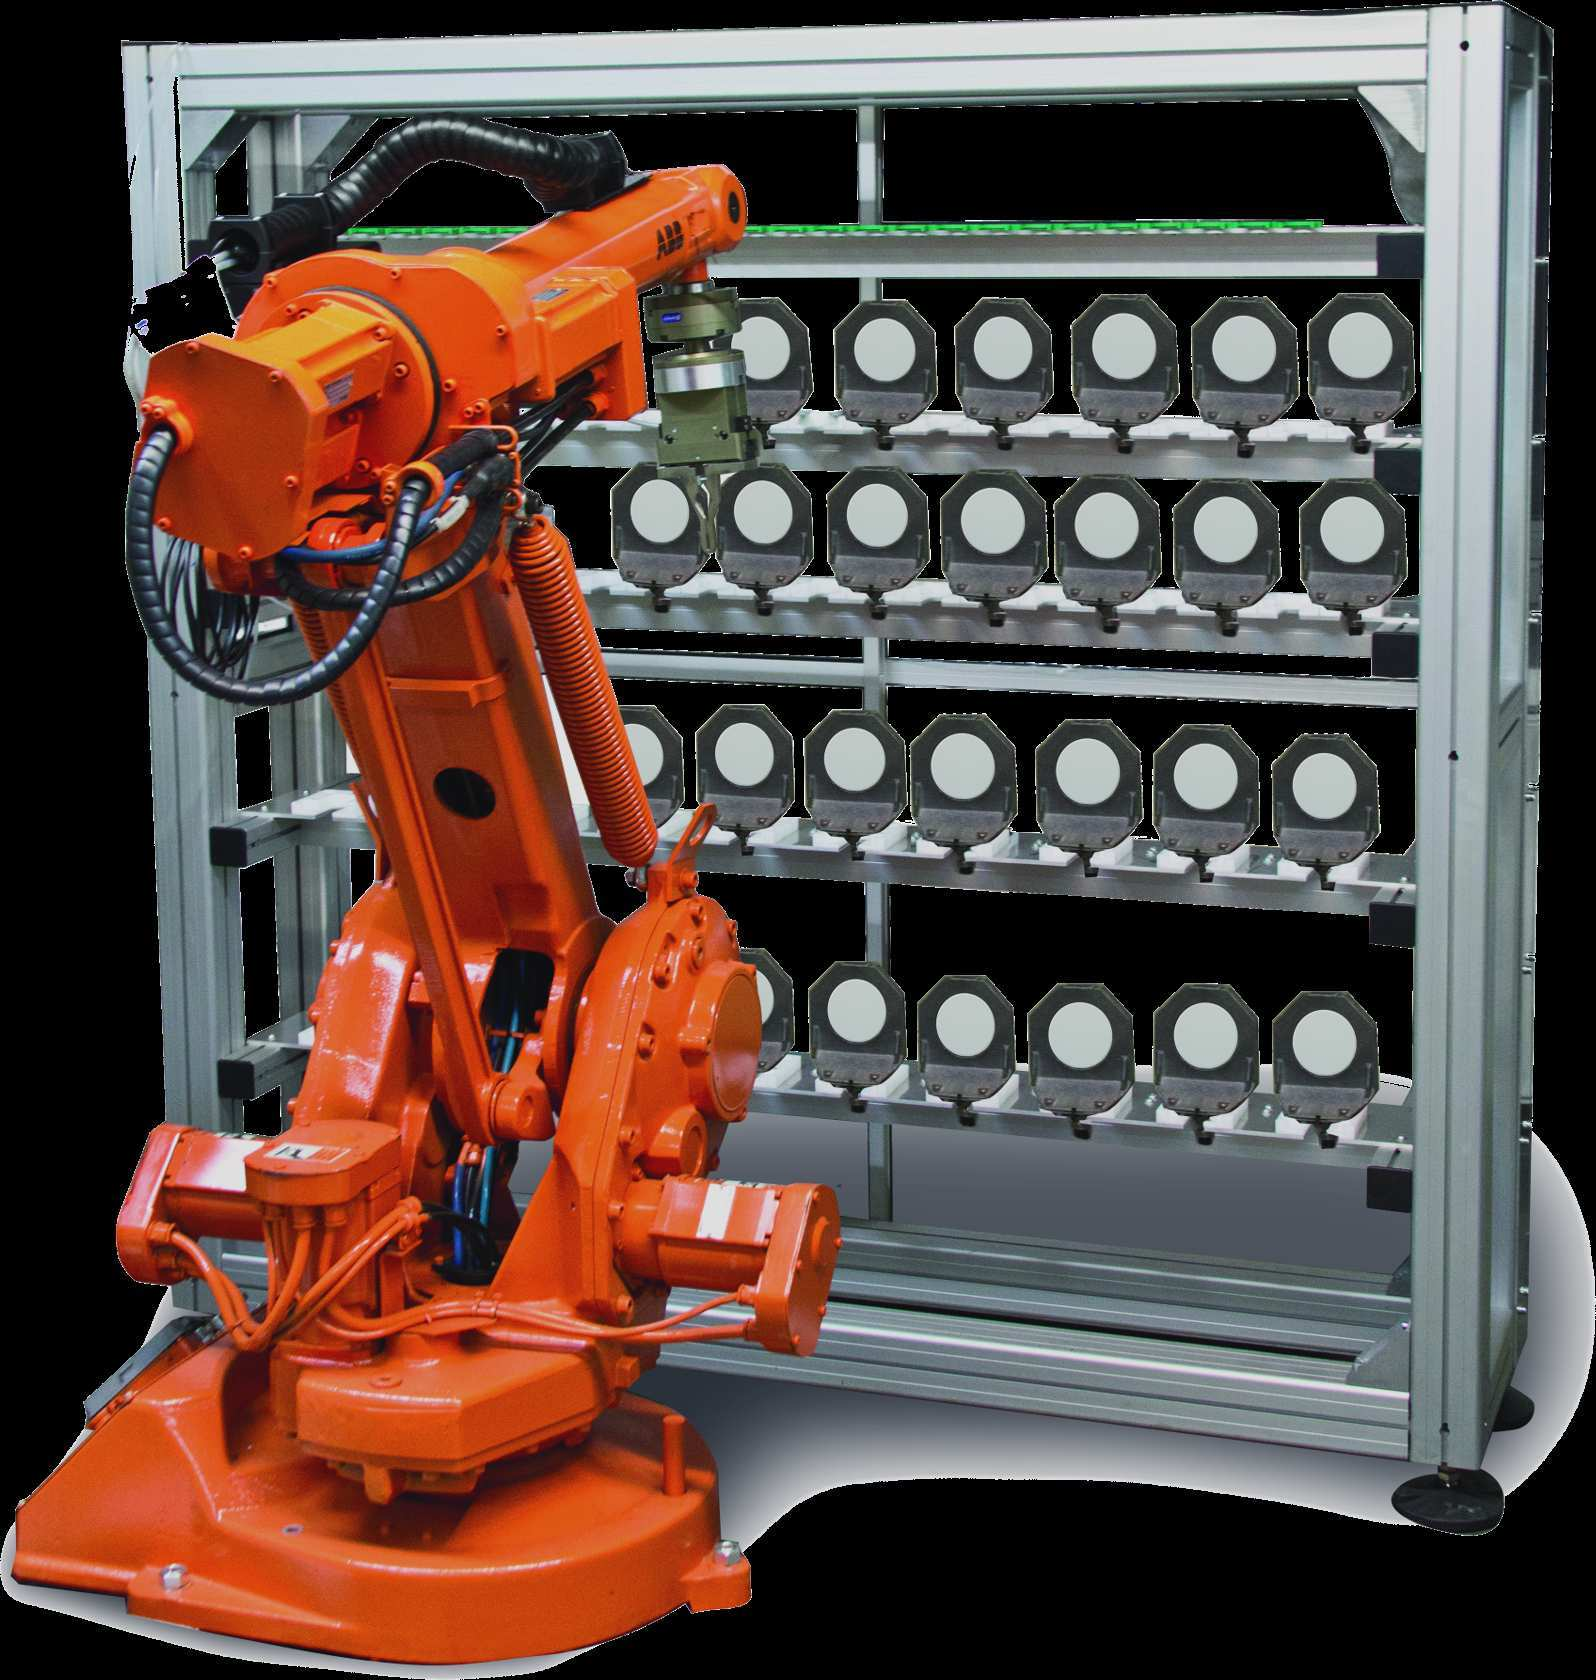 850i Automatización completa con manejo robótico de herramientas y materiales Totalmente automático Solución de alta tecnología para uso contínuo totalmente automatizado gracias al brazo robótico